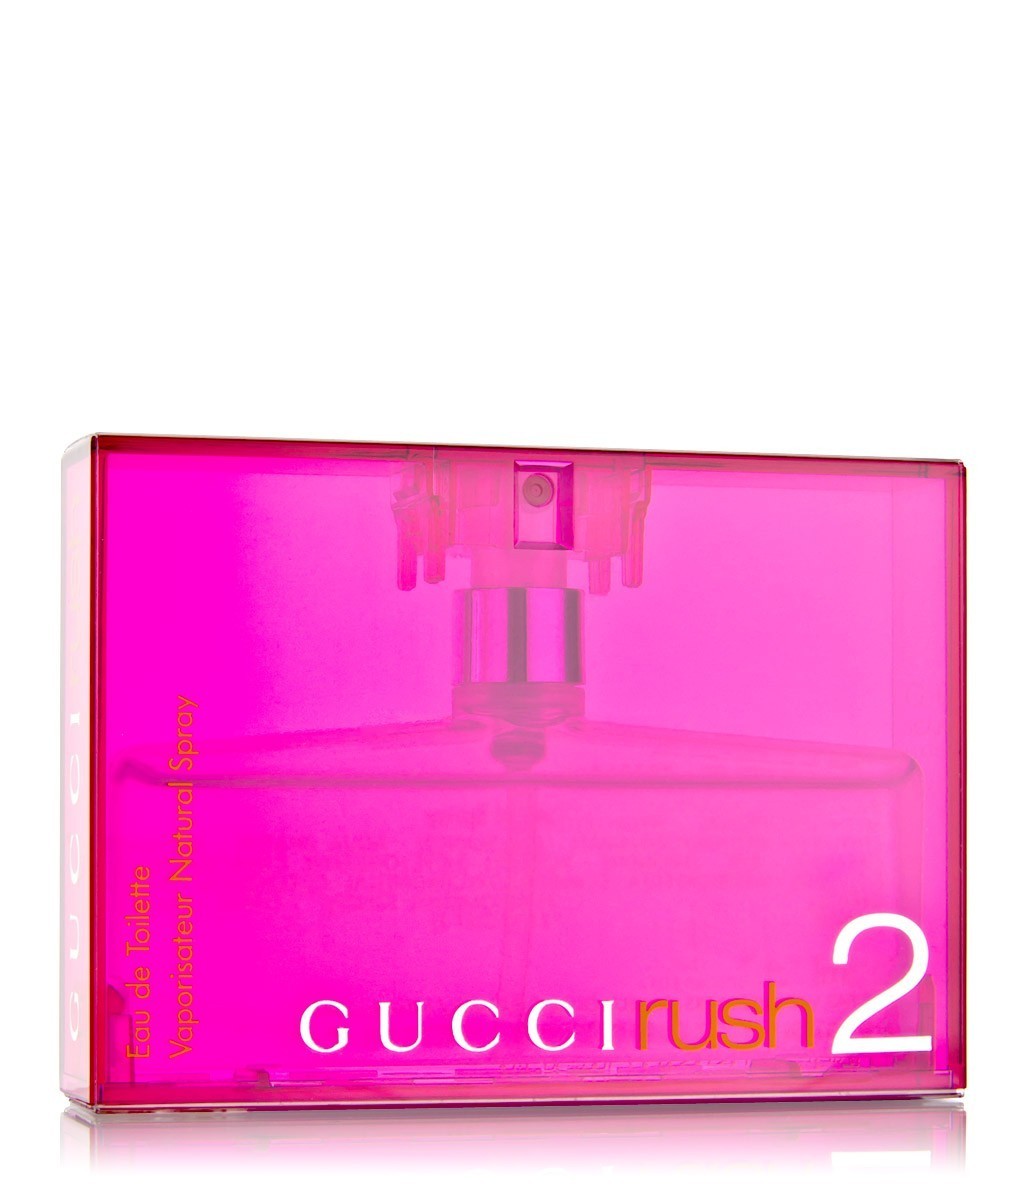 Gucci Rush 2 50 -